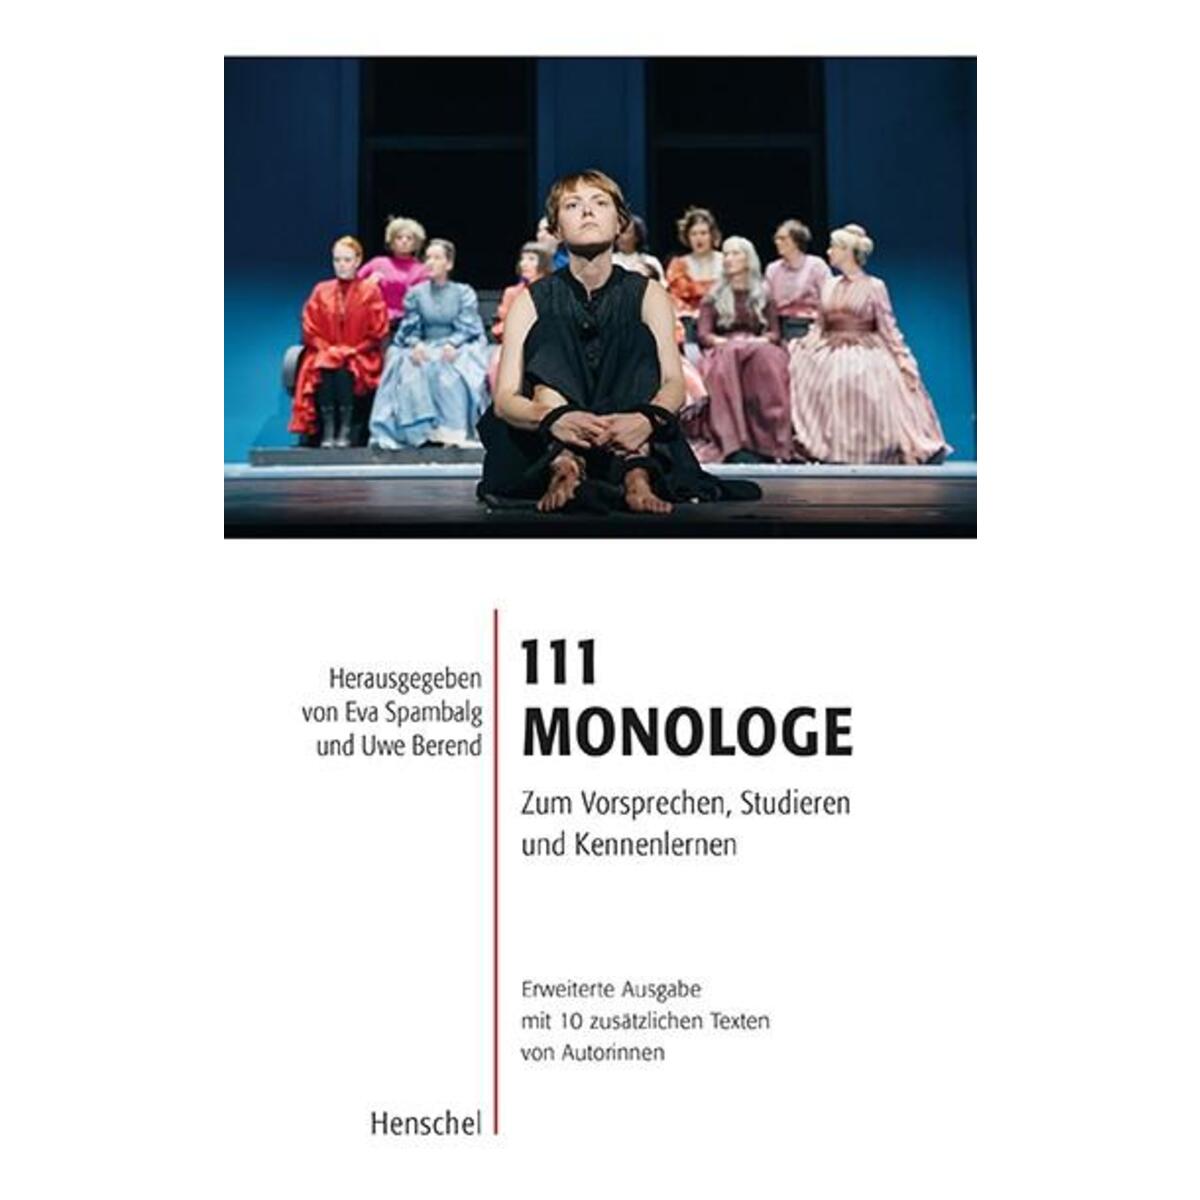 111 Monologe von Henschel Verlag